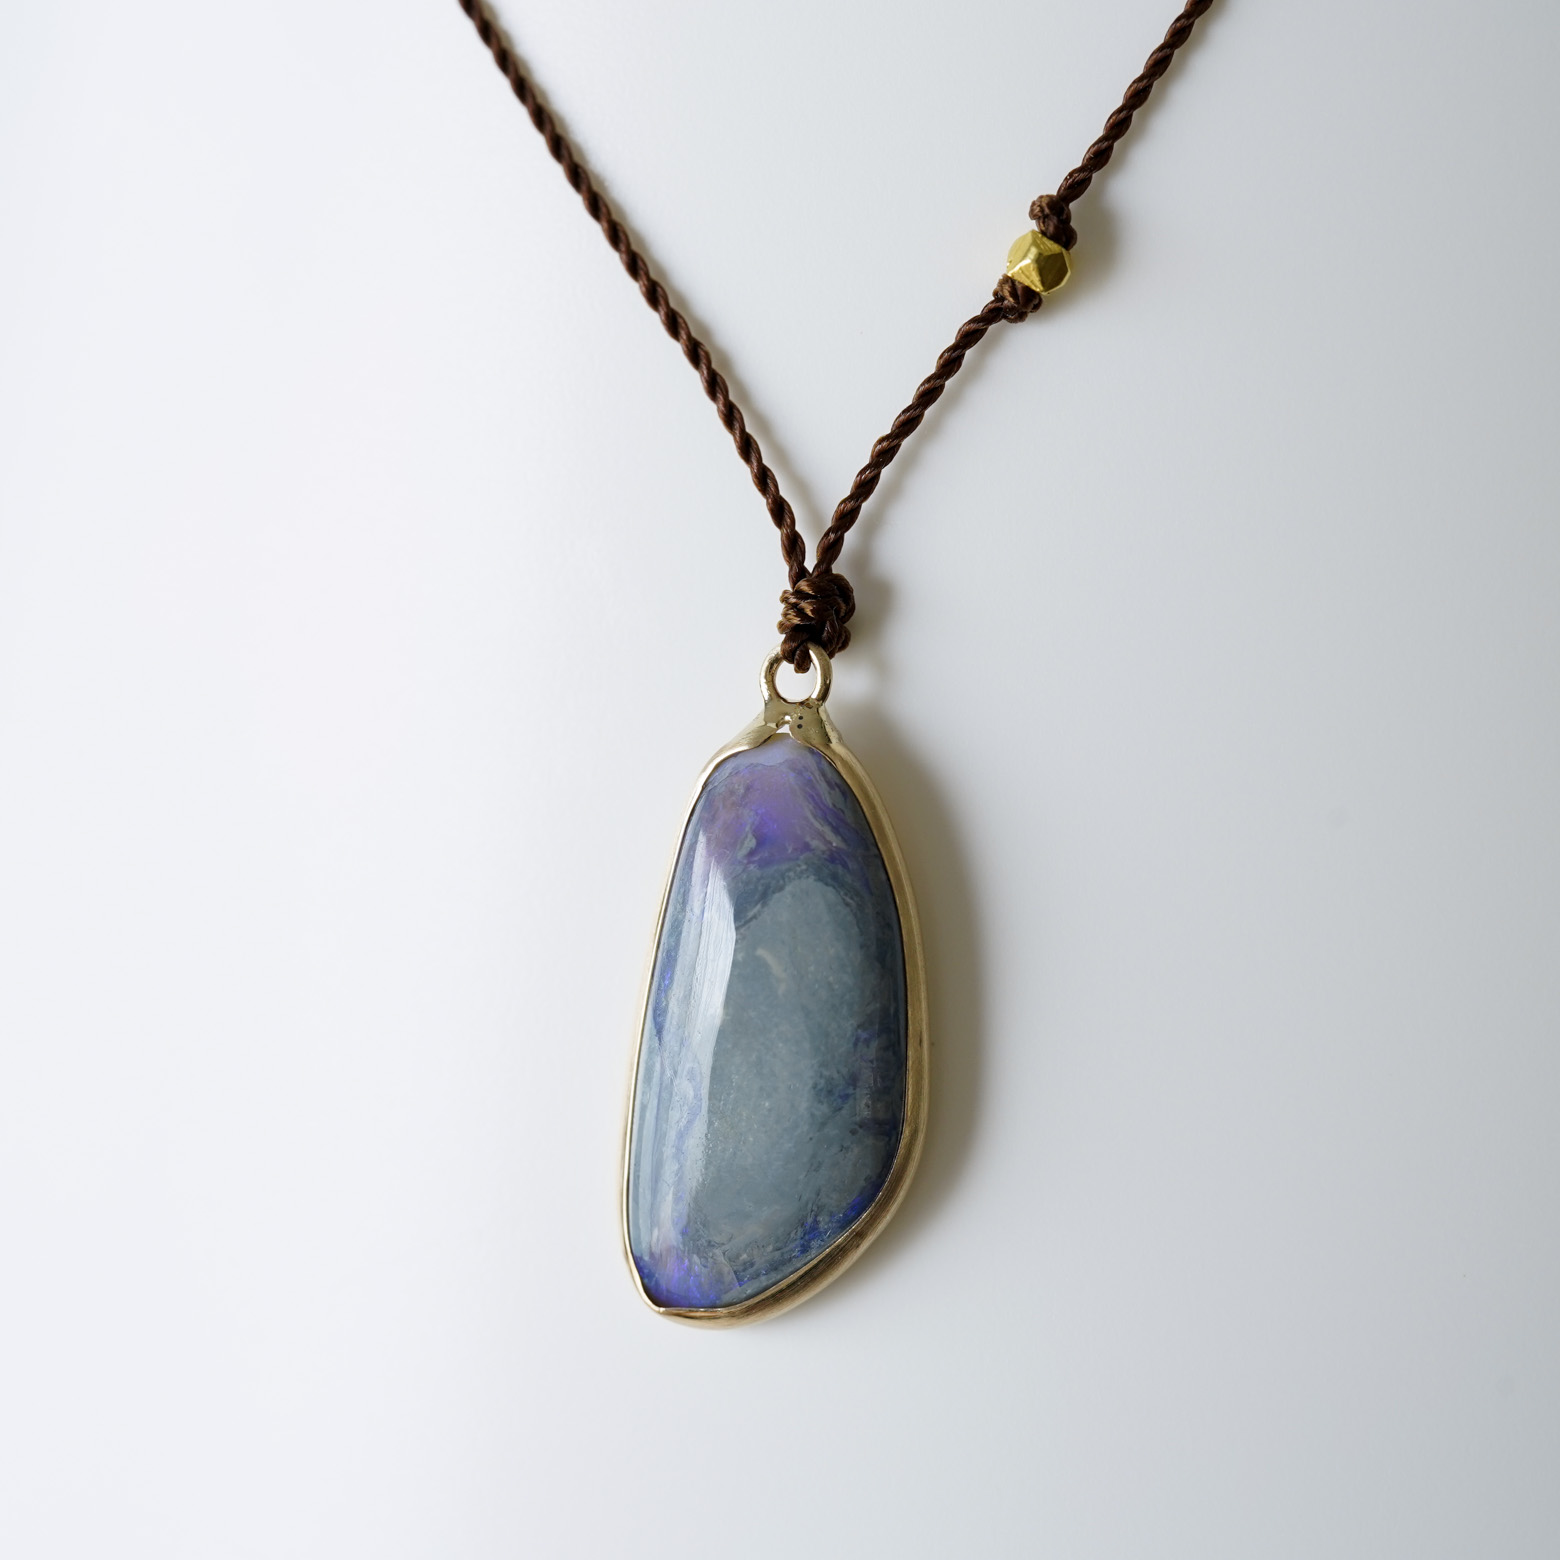 Enclsoed Australian Blue Opal (Margaret Solow) - SOURCE objects